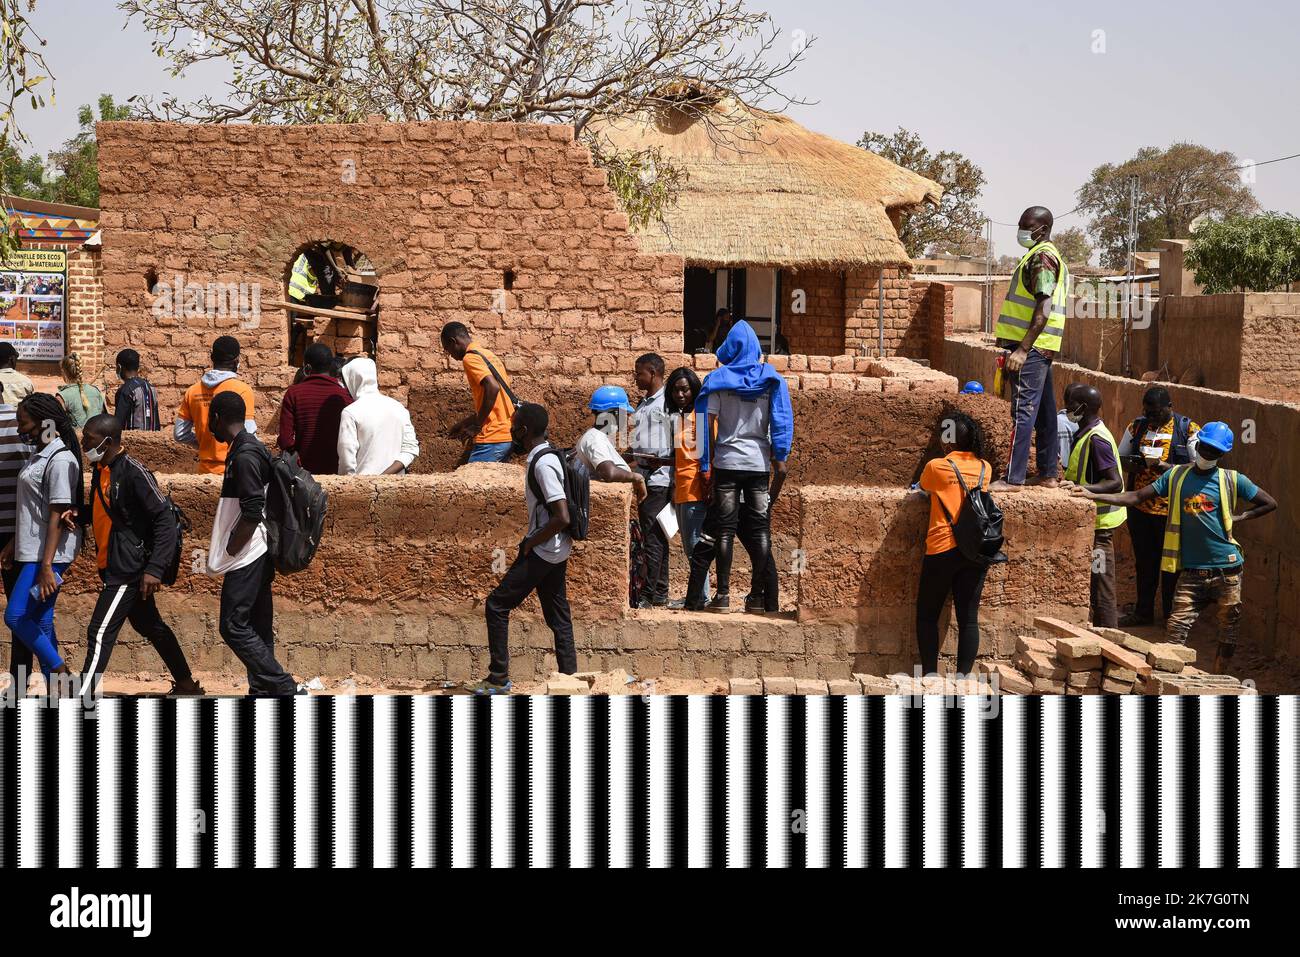 ©Nicolas Remene / le Pictorium/MAXPPP - Nicolas Remene / le Pictorium - 26/2/2021 - Burkina Faso / Ouagadougou / Ouagadougou - 5eme Edition du seminaire FACTsahel+ les 25, 26, 27 et 28 fevrier 2021 a Ouagadougou au Burkina Faso. Le « FACT sahel+ » est le reseau qui federe les acteurs de la Construction en Terre au Sahel et dans ses says limitrophes. / 26/2/2021 - Burkina Faso () / Ouagadougou / Ouagadougou - 5th° edizione del seminario FACTsahel+ del 25, 26, 27 e 28 febbraio 2021 a Ouagadougou, Burkina Faso. FATTO sahel+' è la rete che federa gli attori della costruzione della Terra nella S Foto Stock